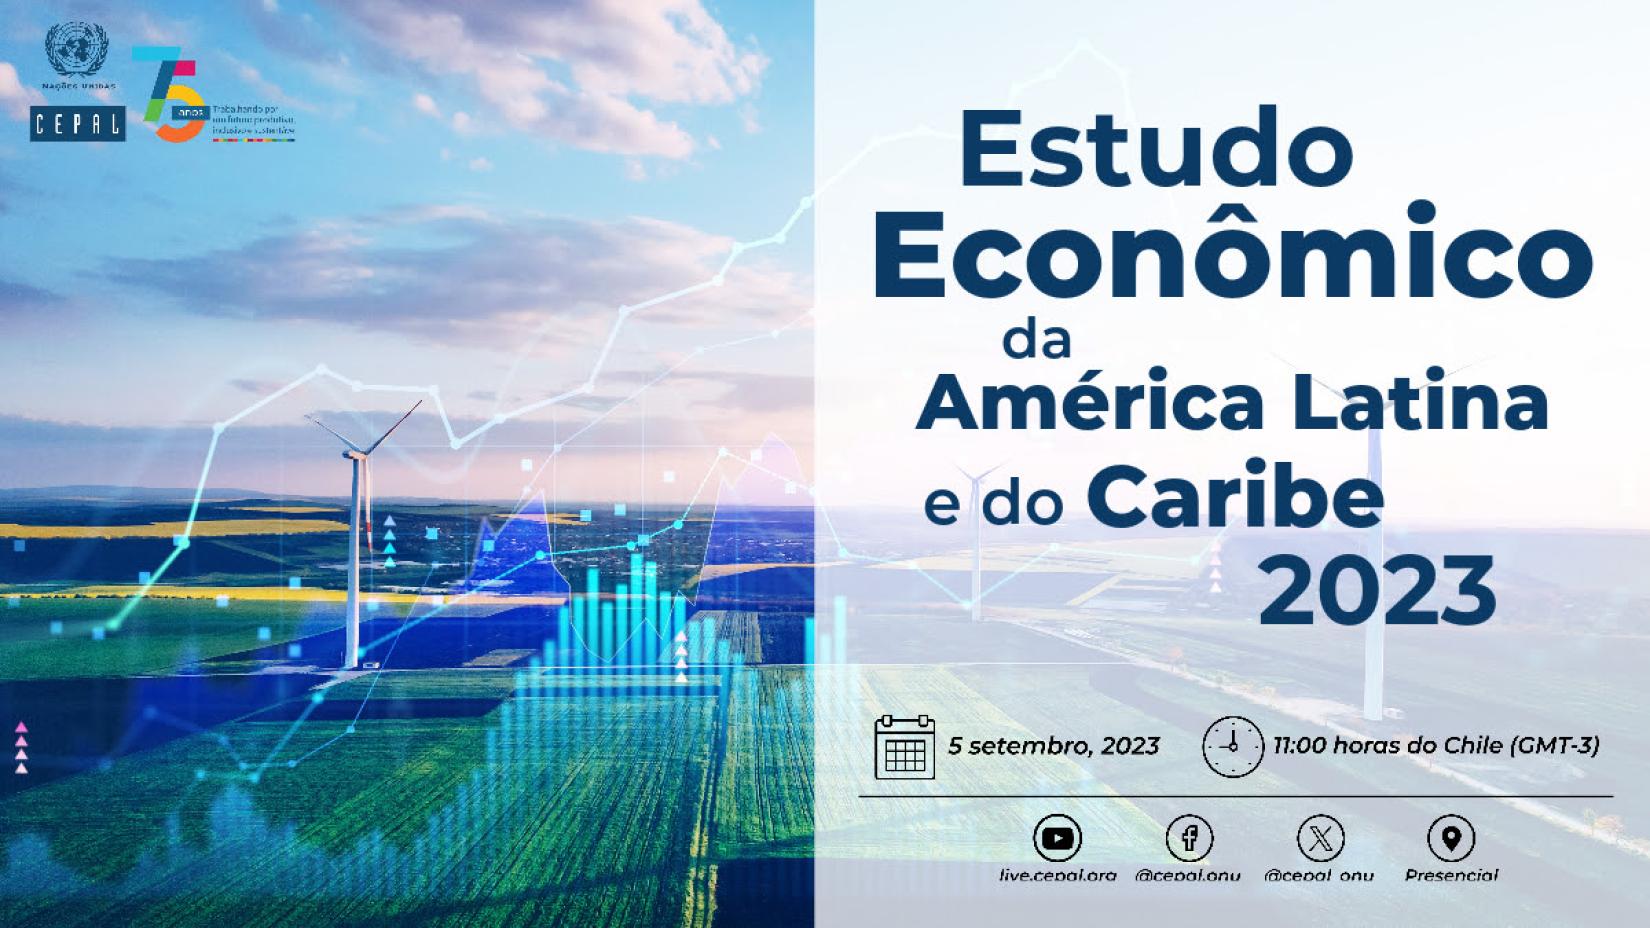 Estudo Econômico da América Latina e do Caribe 2023